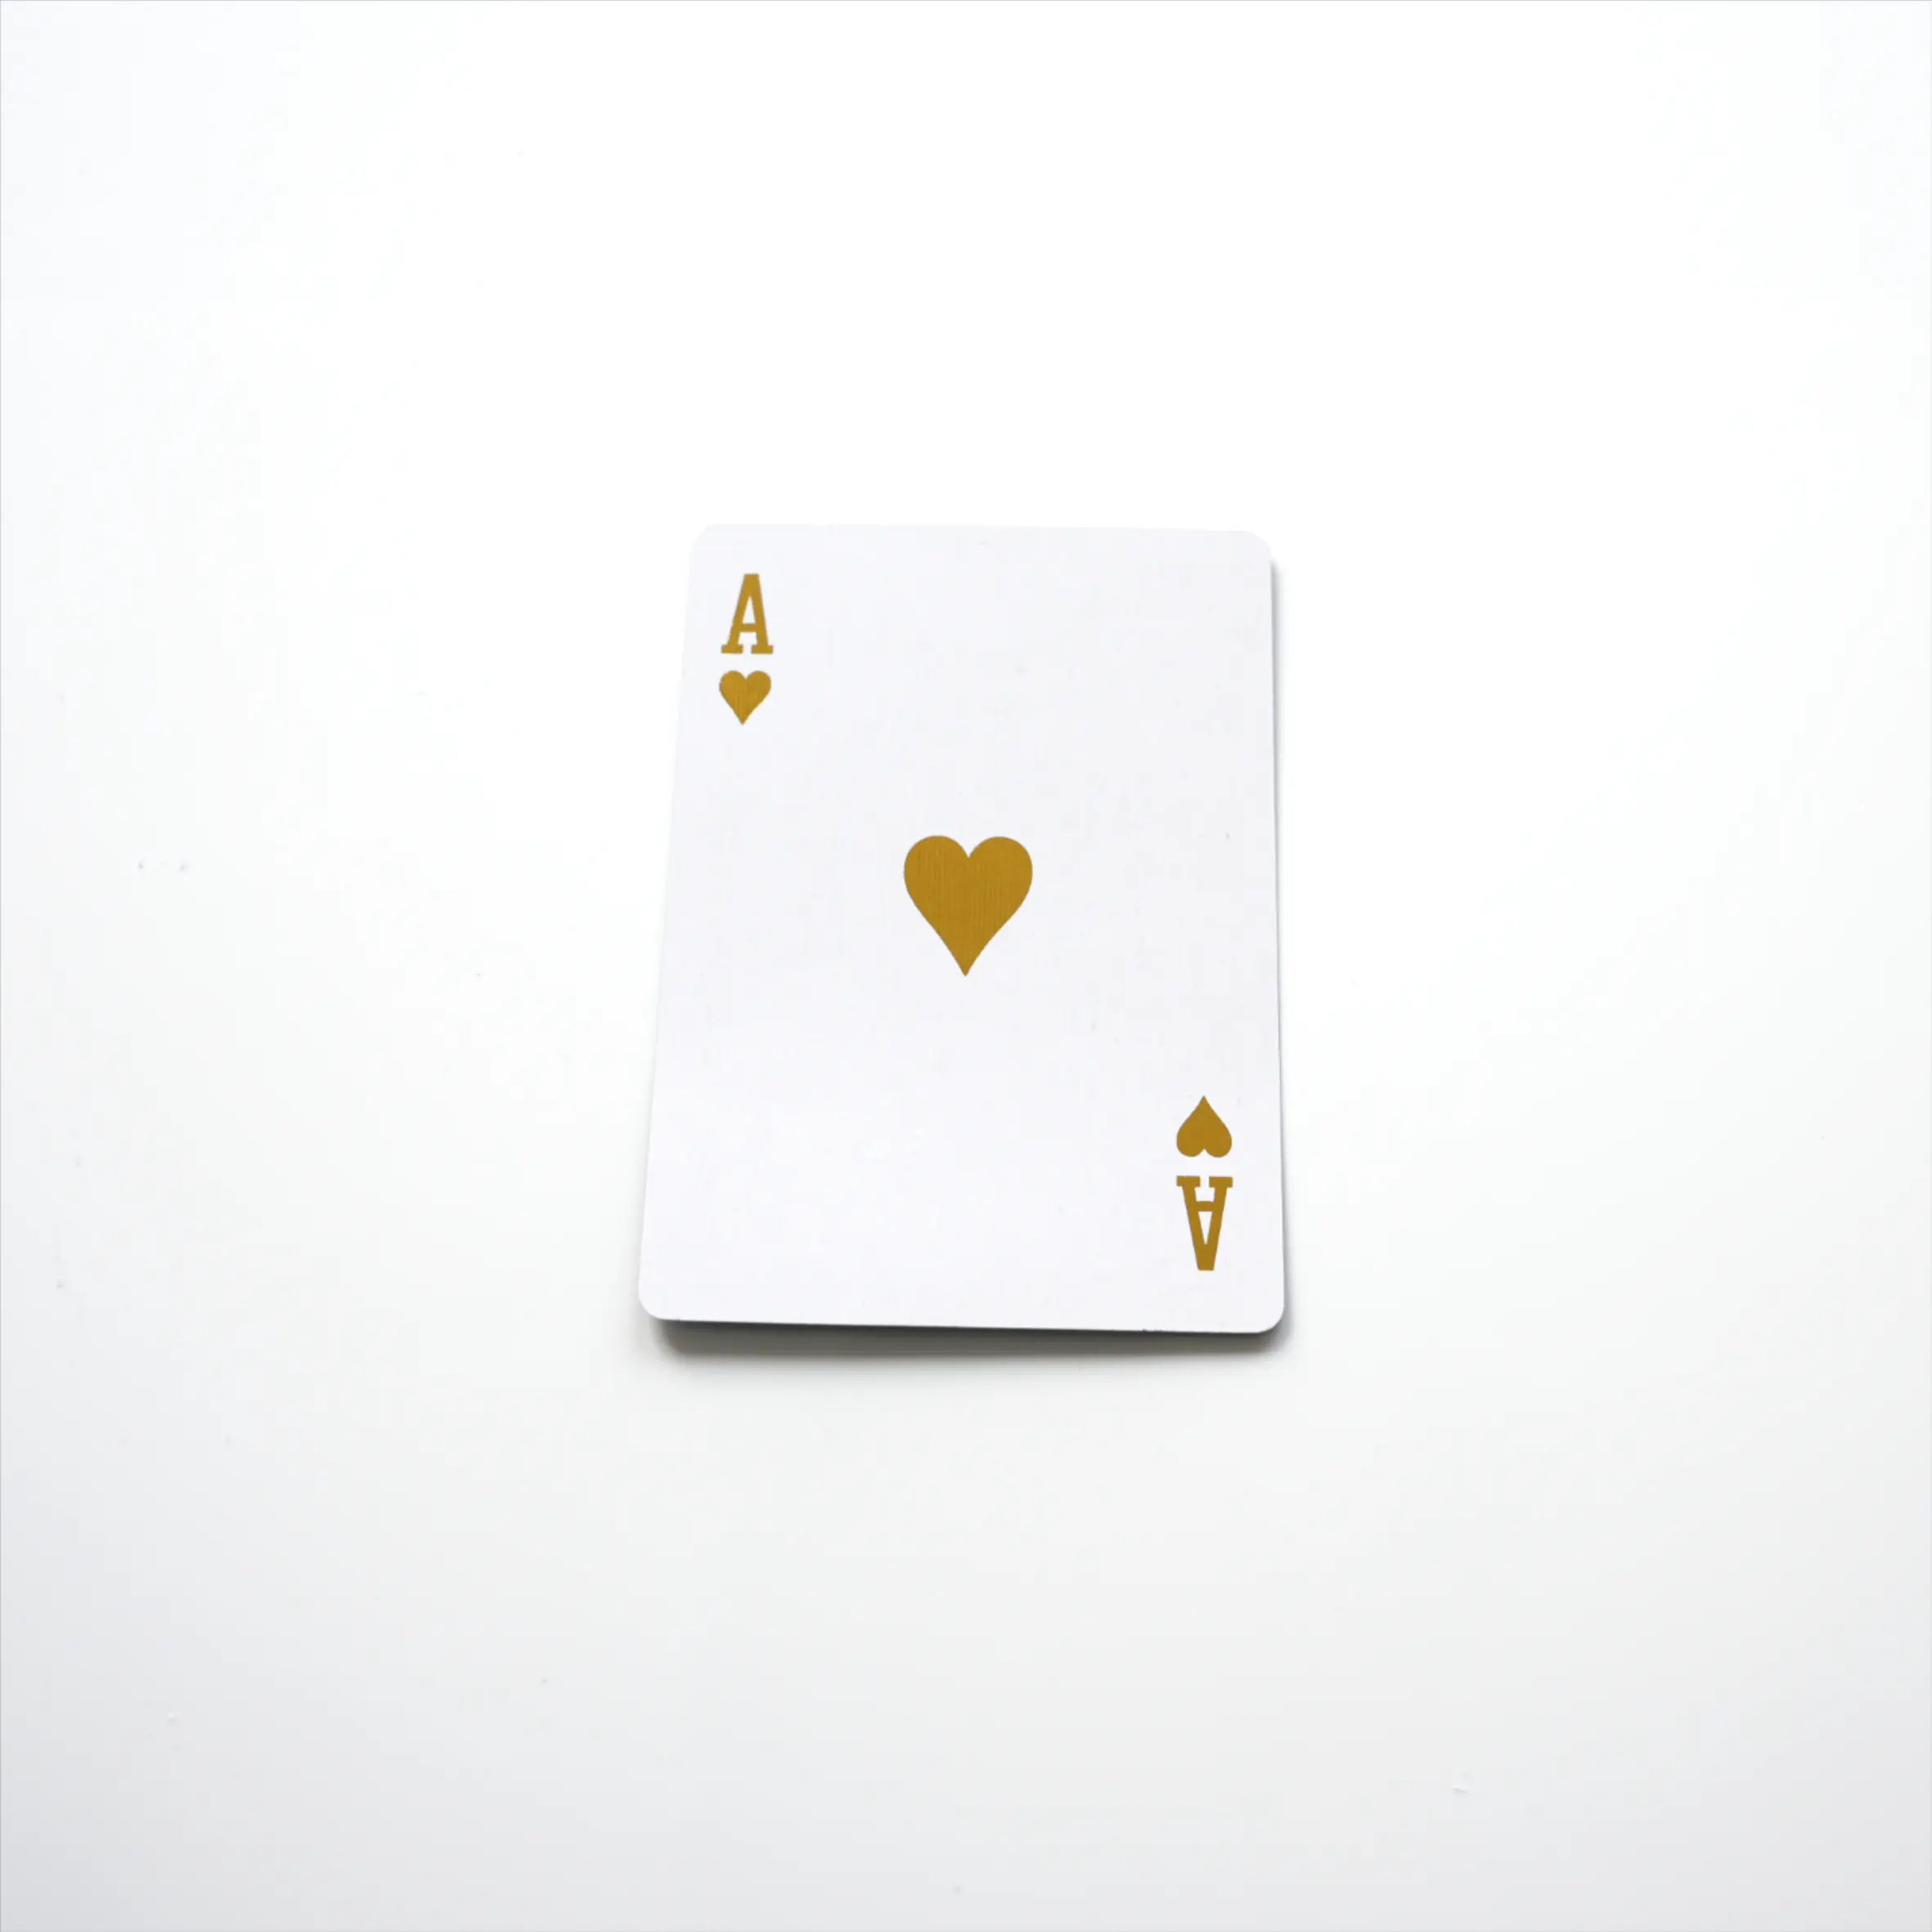 Beste Kwaliteit 3d Papier Karton Origineel Spel Handel/Brug/Bulk/Bussiness Spelen Poker Kaarten Voor Kinderen/Volwassenen